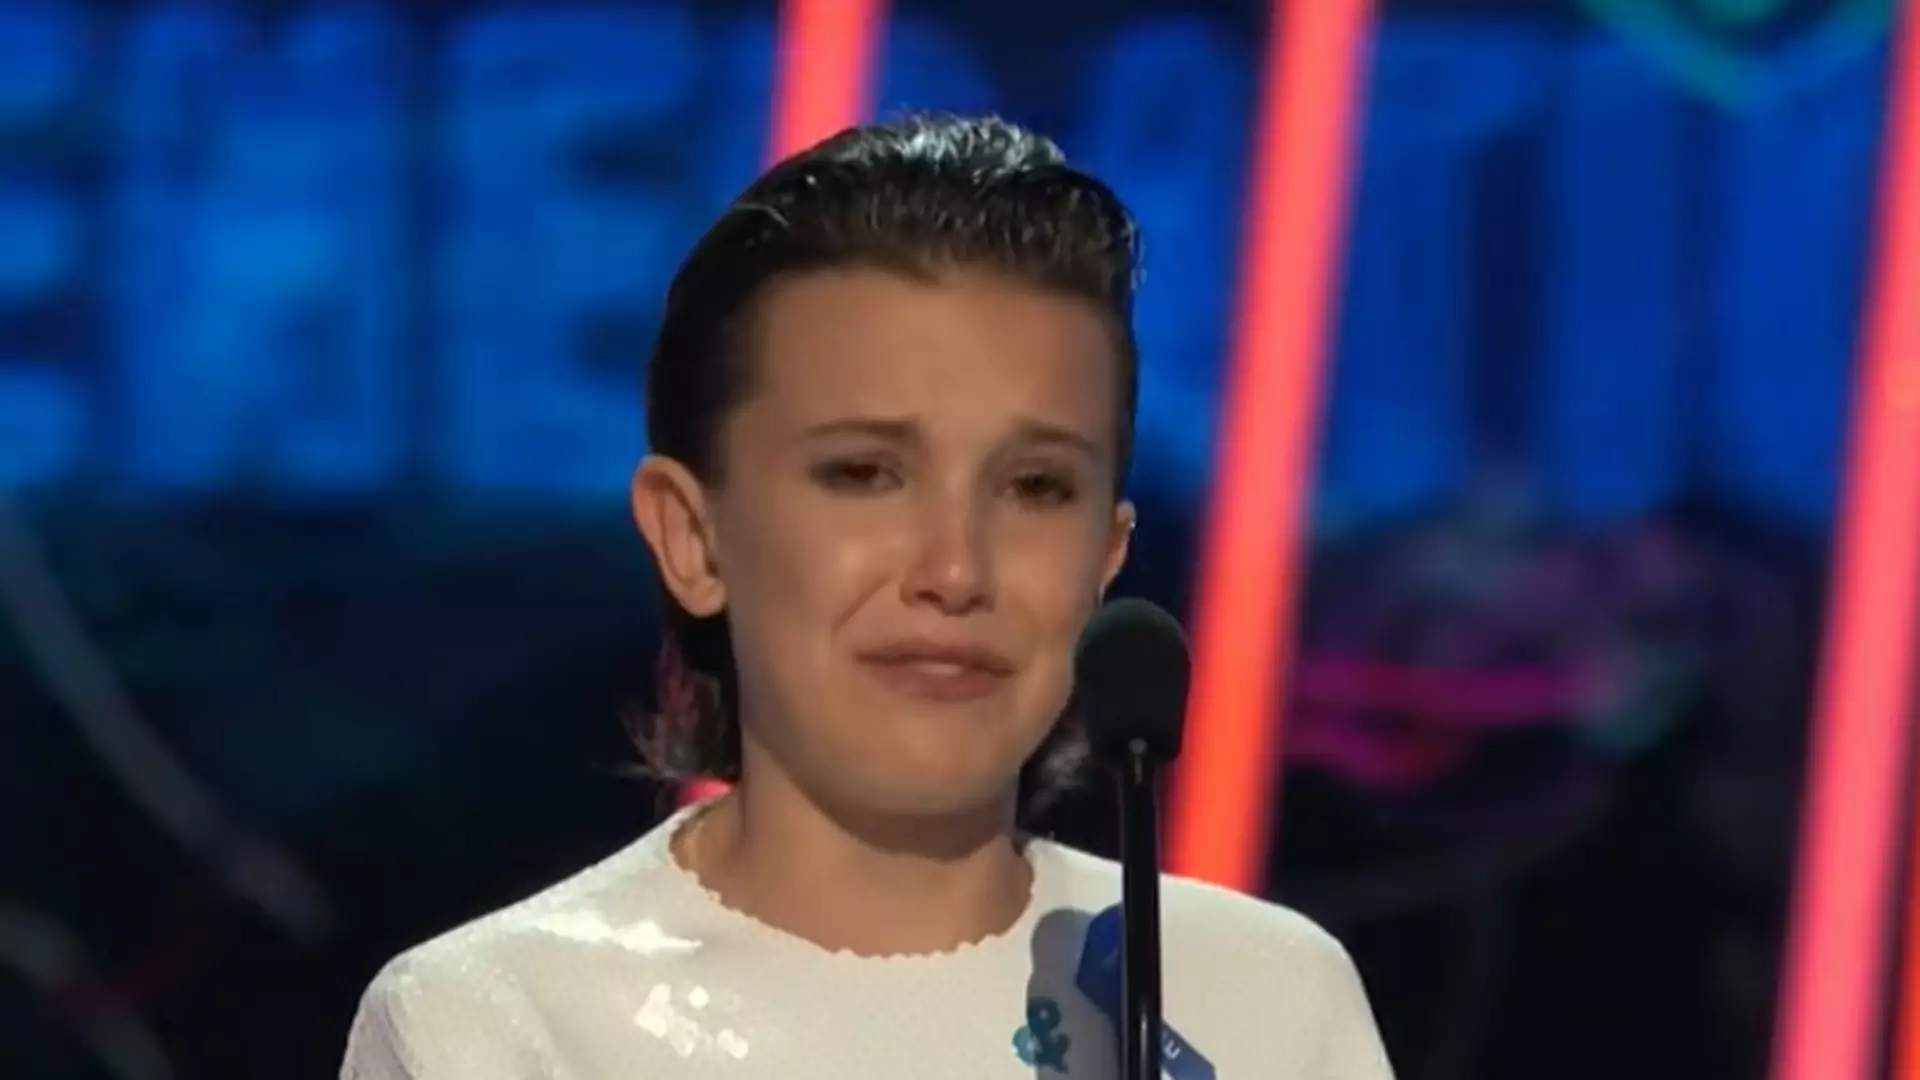 Wzruszająca przemowa 13-letniej aktorki ze "Stranger Things" na gali MTV. Zobacz, jak odbierała nagrodę